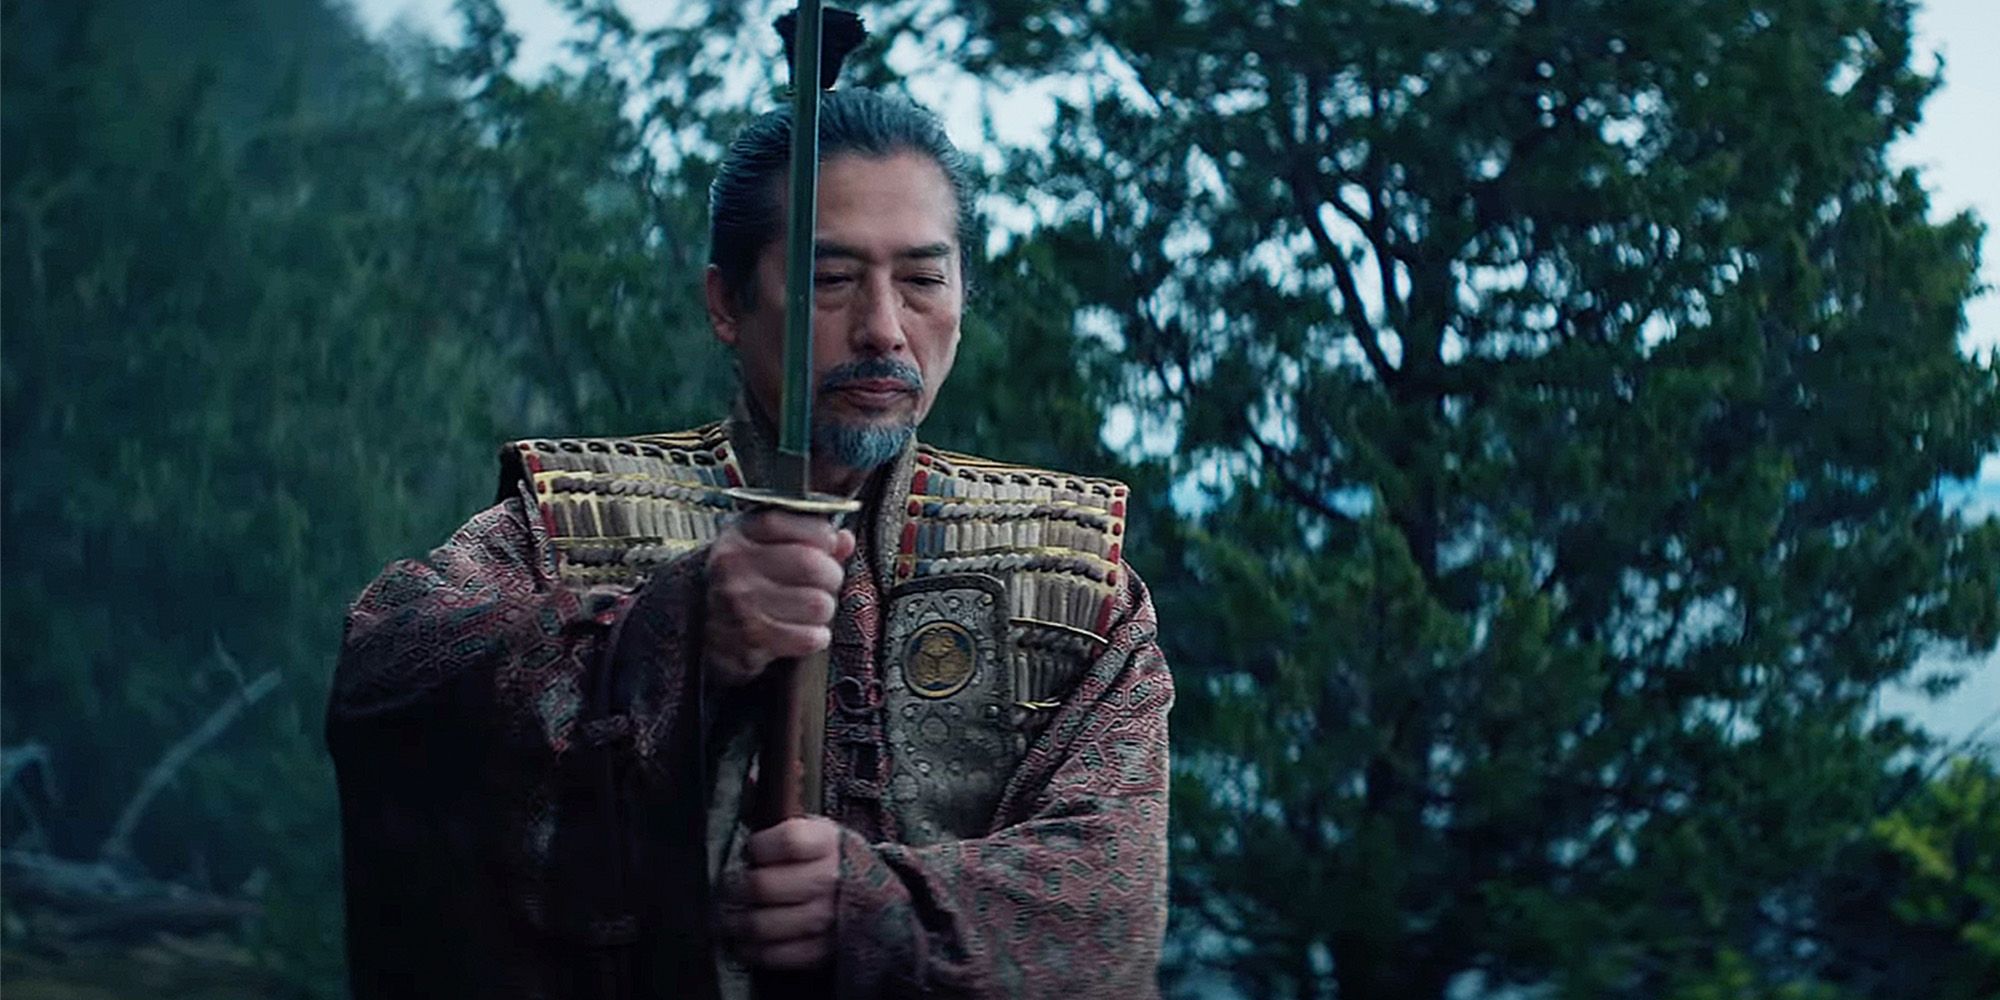 Hiroyuki Sanada wielding a sword as Toranaga in Shogun episode 10